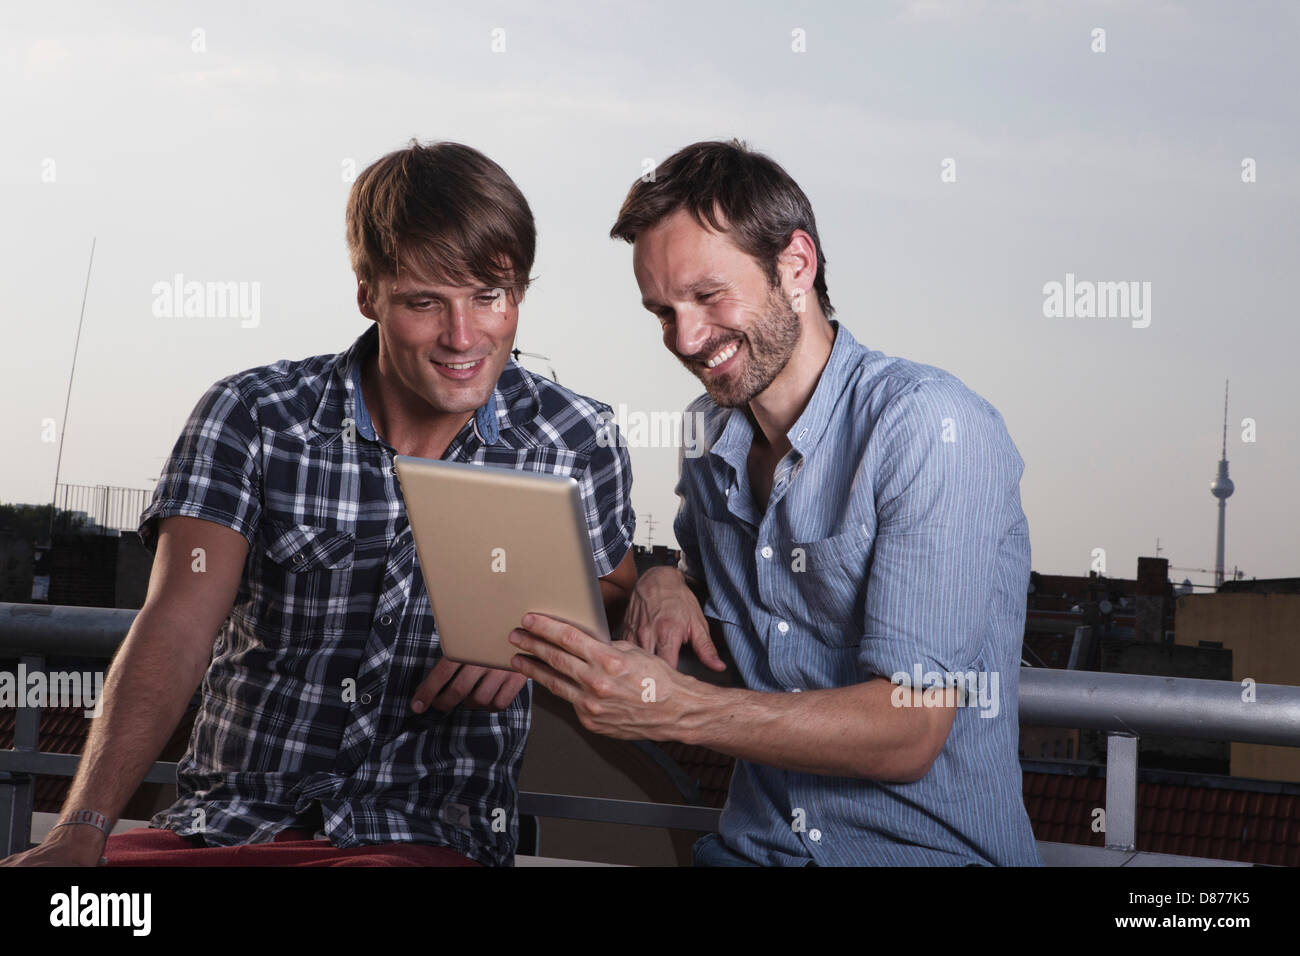 Germania, Berlino, uomini con tavoletta digitale sulla terrazza sul tetto, sorridente Foto Stock